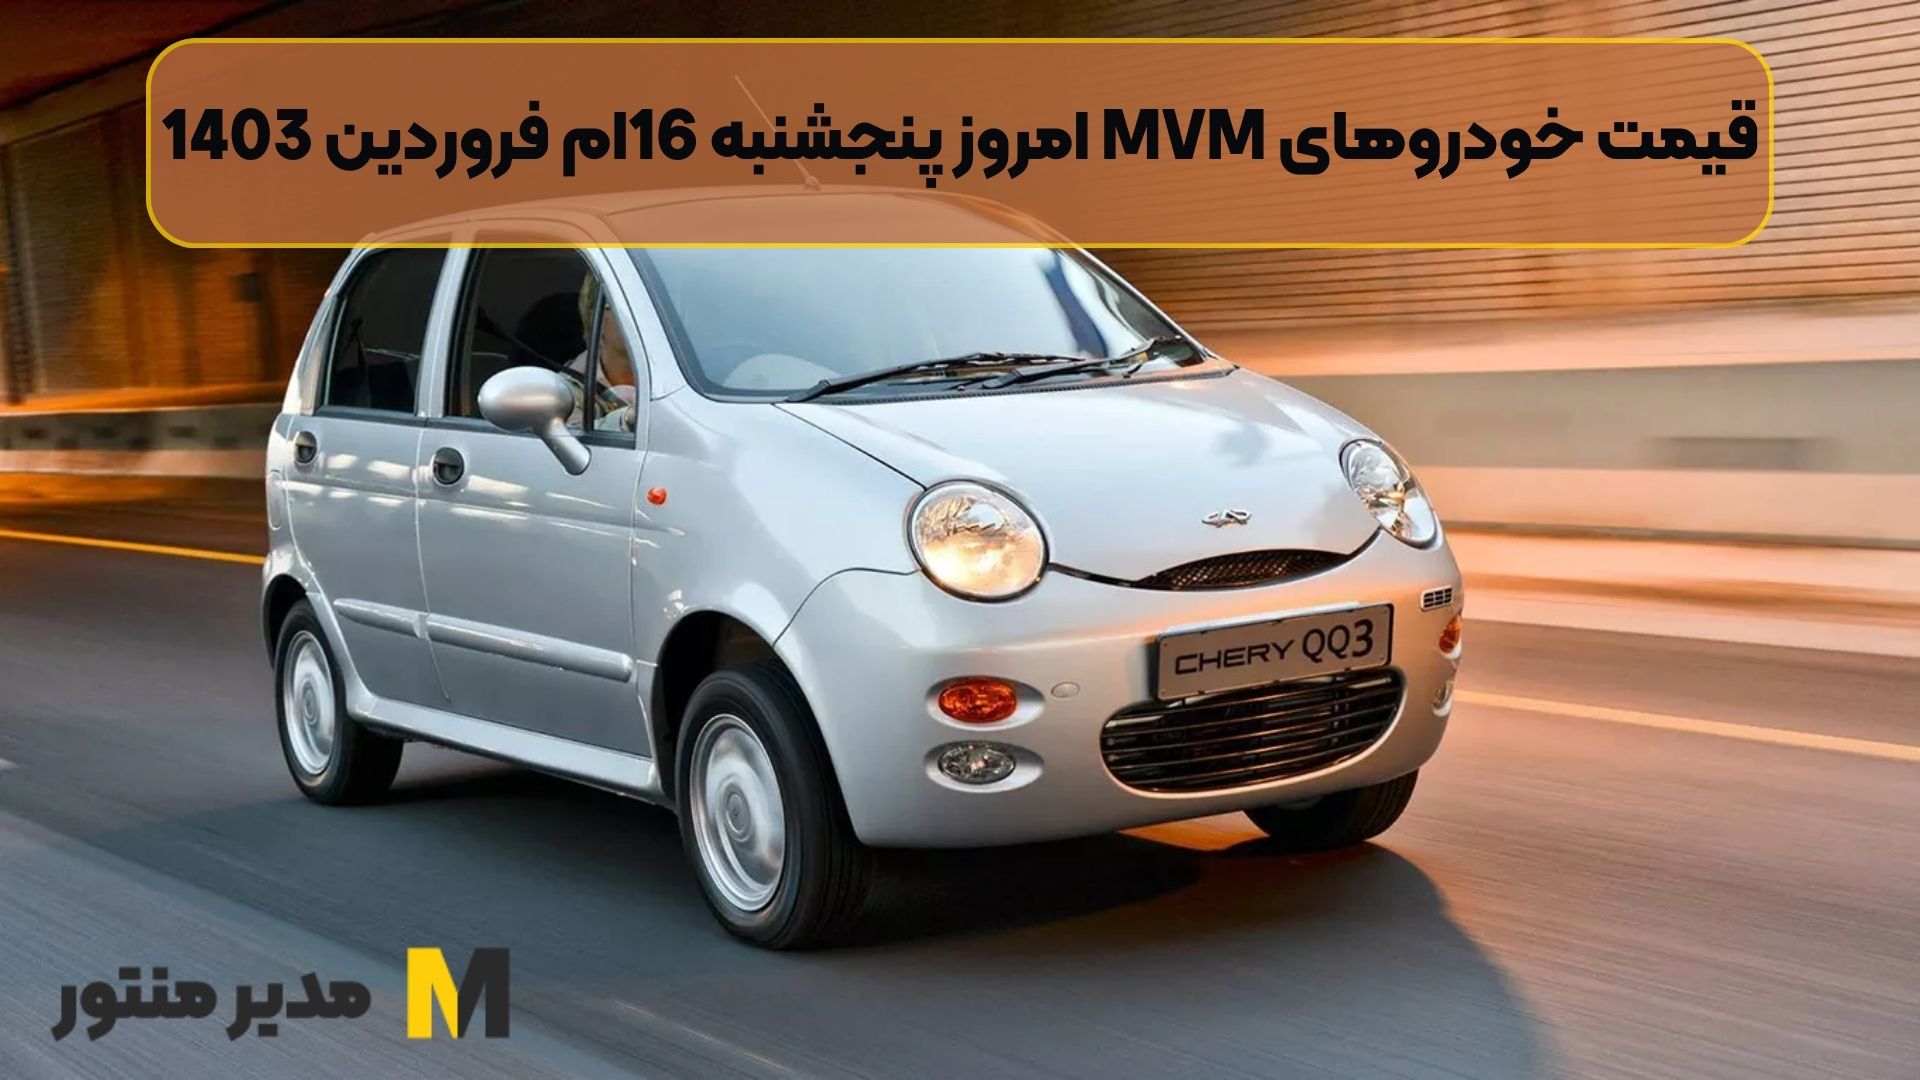 قیمت خودروهای MVM امروز پنجشنبه 16ام فروردین 1403